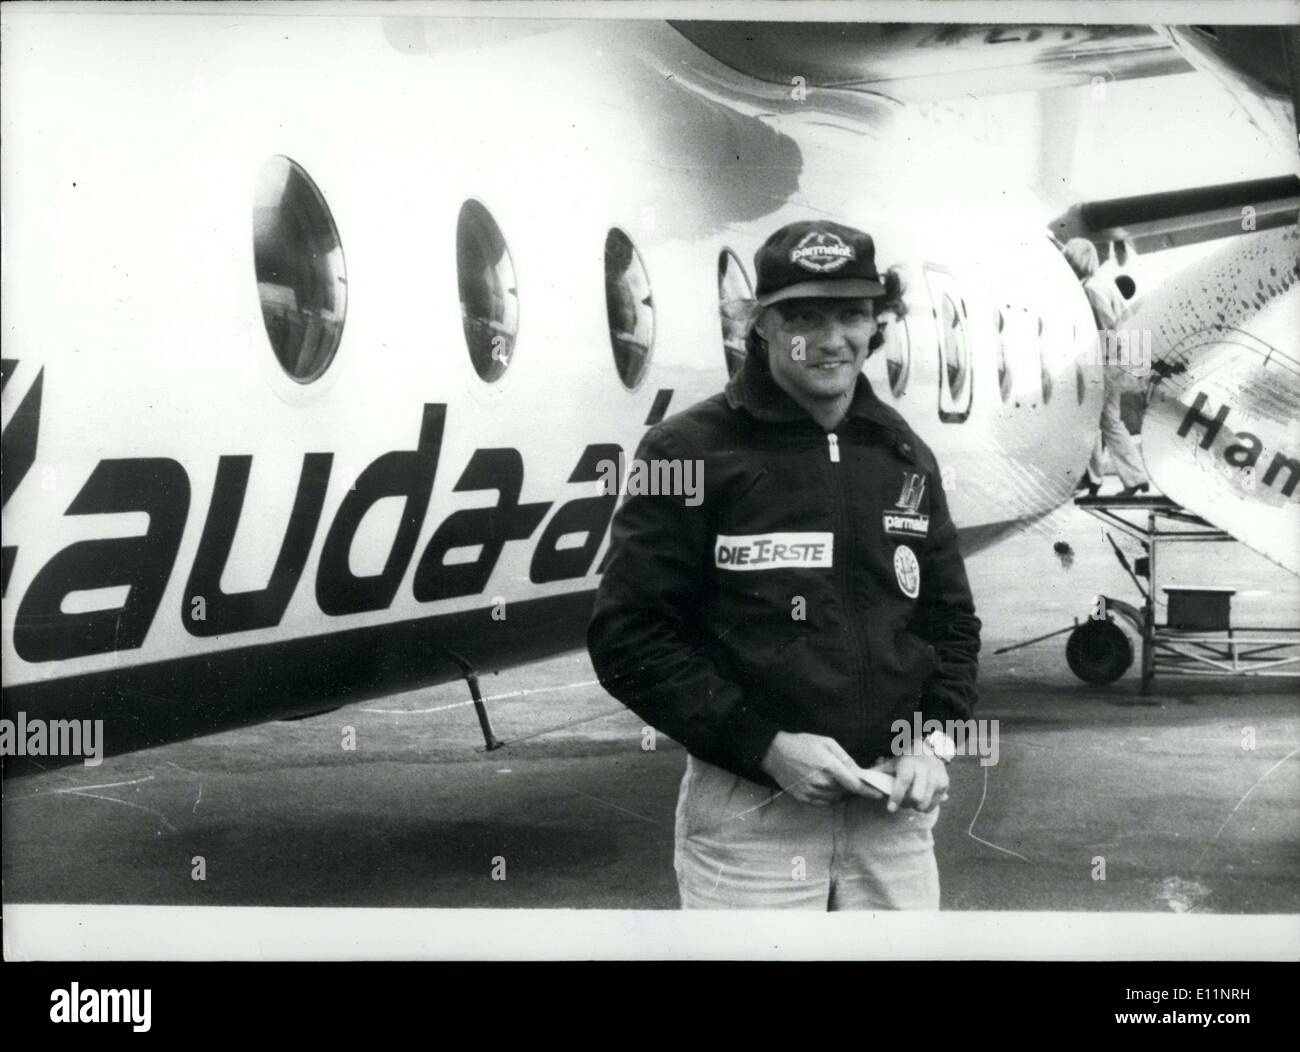 Lug. 16, 1979 - ex campione del mondo, il corridore austriaco ha appena lanciato la sua propria compagnia aerea chiamato ''Lauda Air''. Il primo collegamento sarà tra Klagenfurt, Austria e Amburgo. Foto Stock